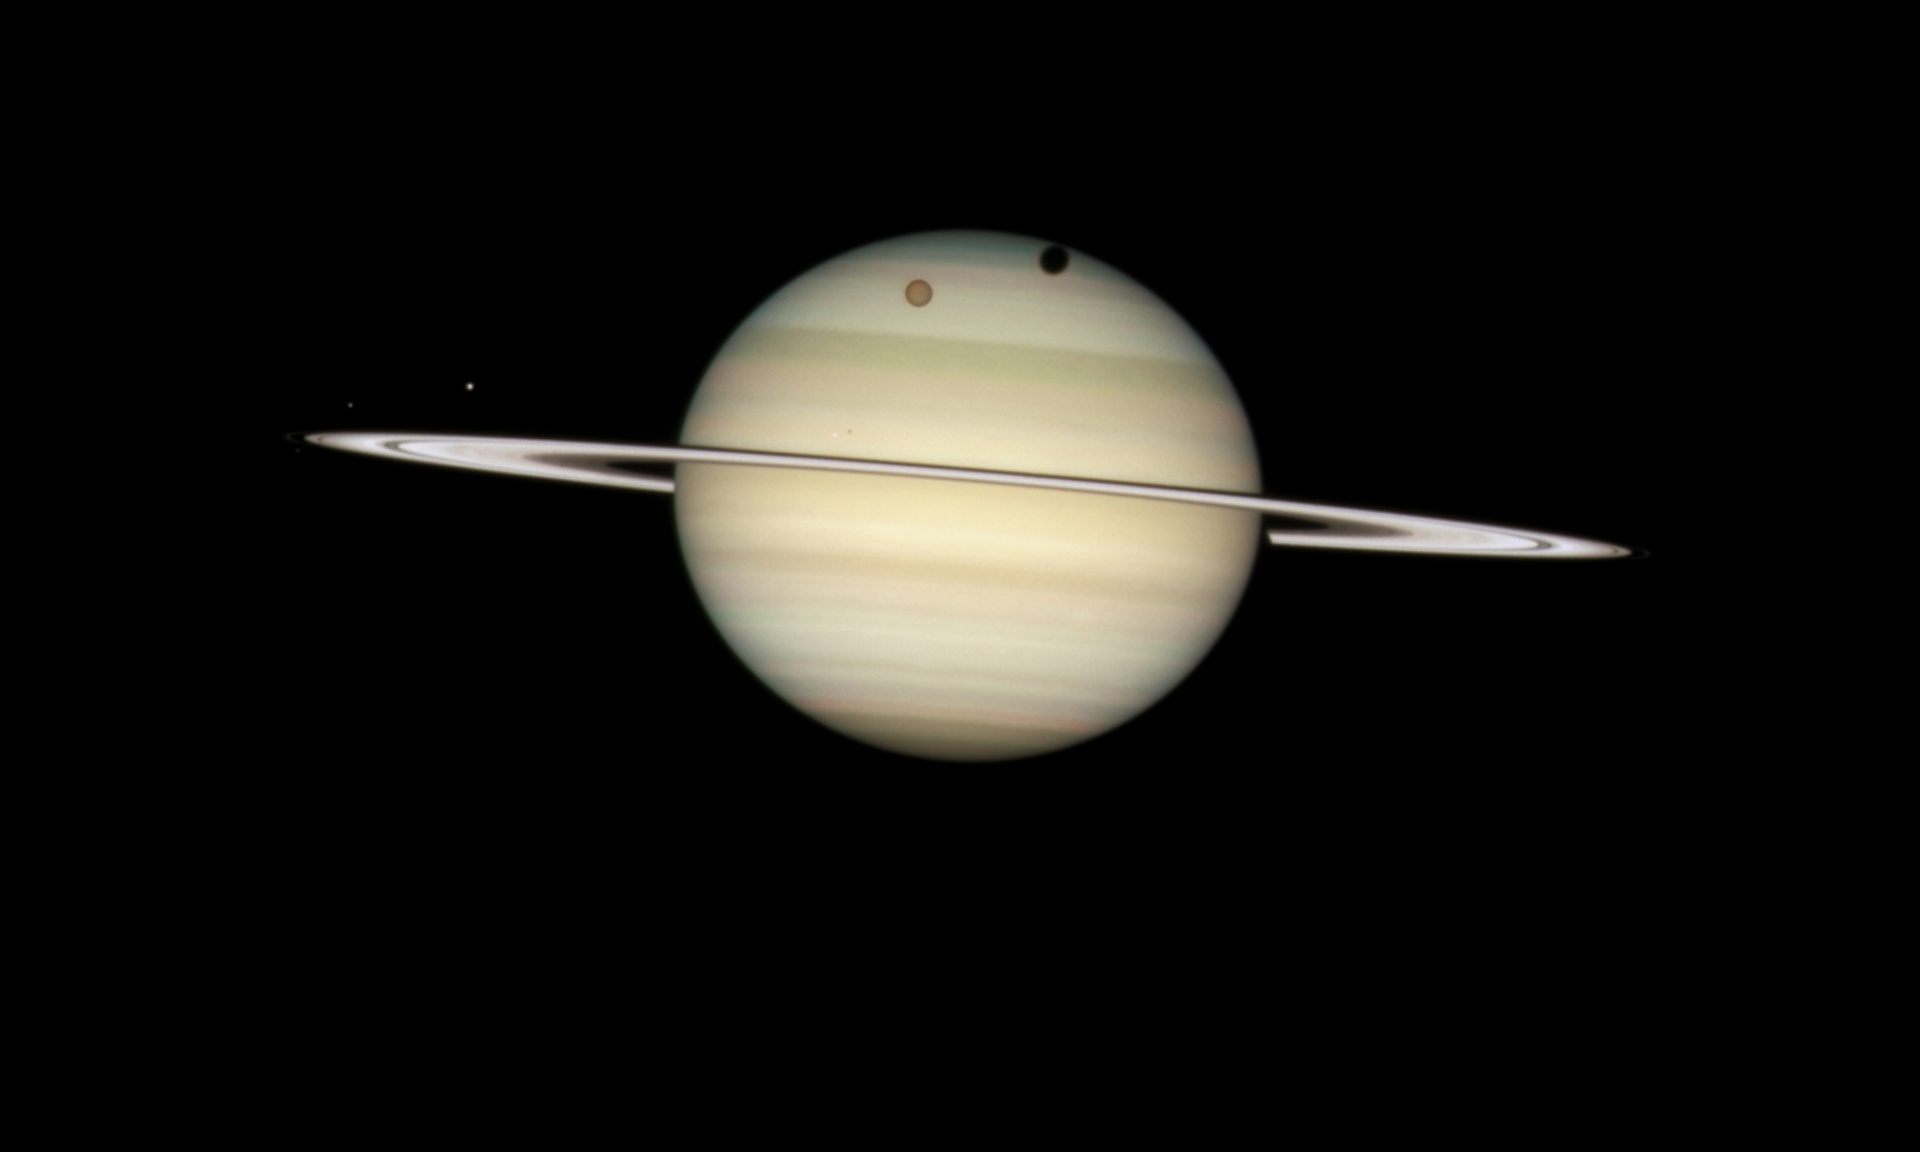 Hubble registra um fenômeno raro, o trânsito de uma lua em Saturno, conseguindo também registrar a sombra da lua Titã passando pela região polar norte do planeta. E na parte equatorial o trânsito da lua Mimas.